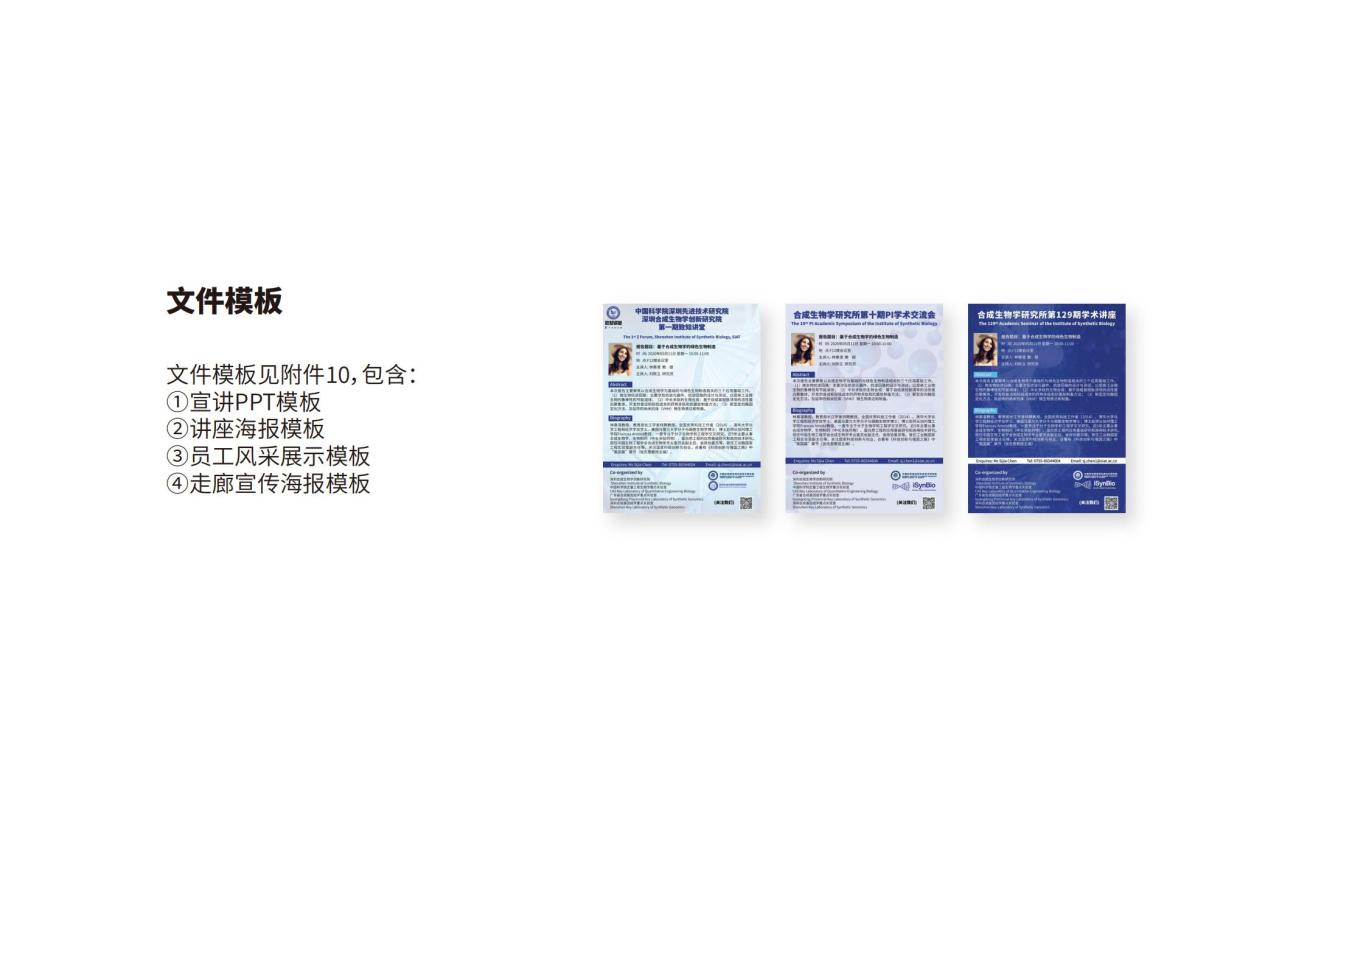 深圳合成生物学创新研究院品牌设计规范图37